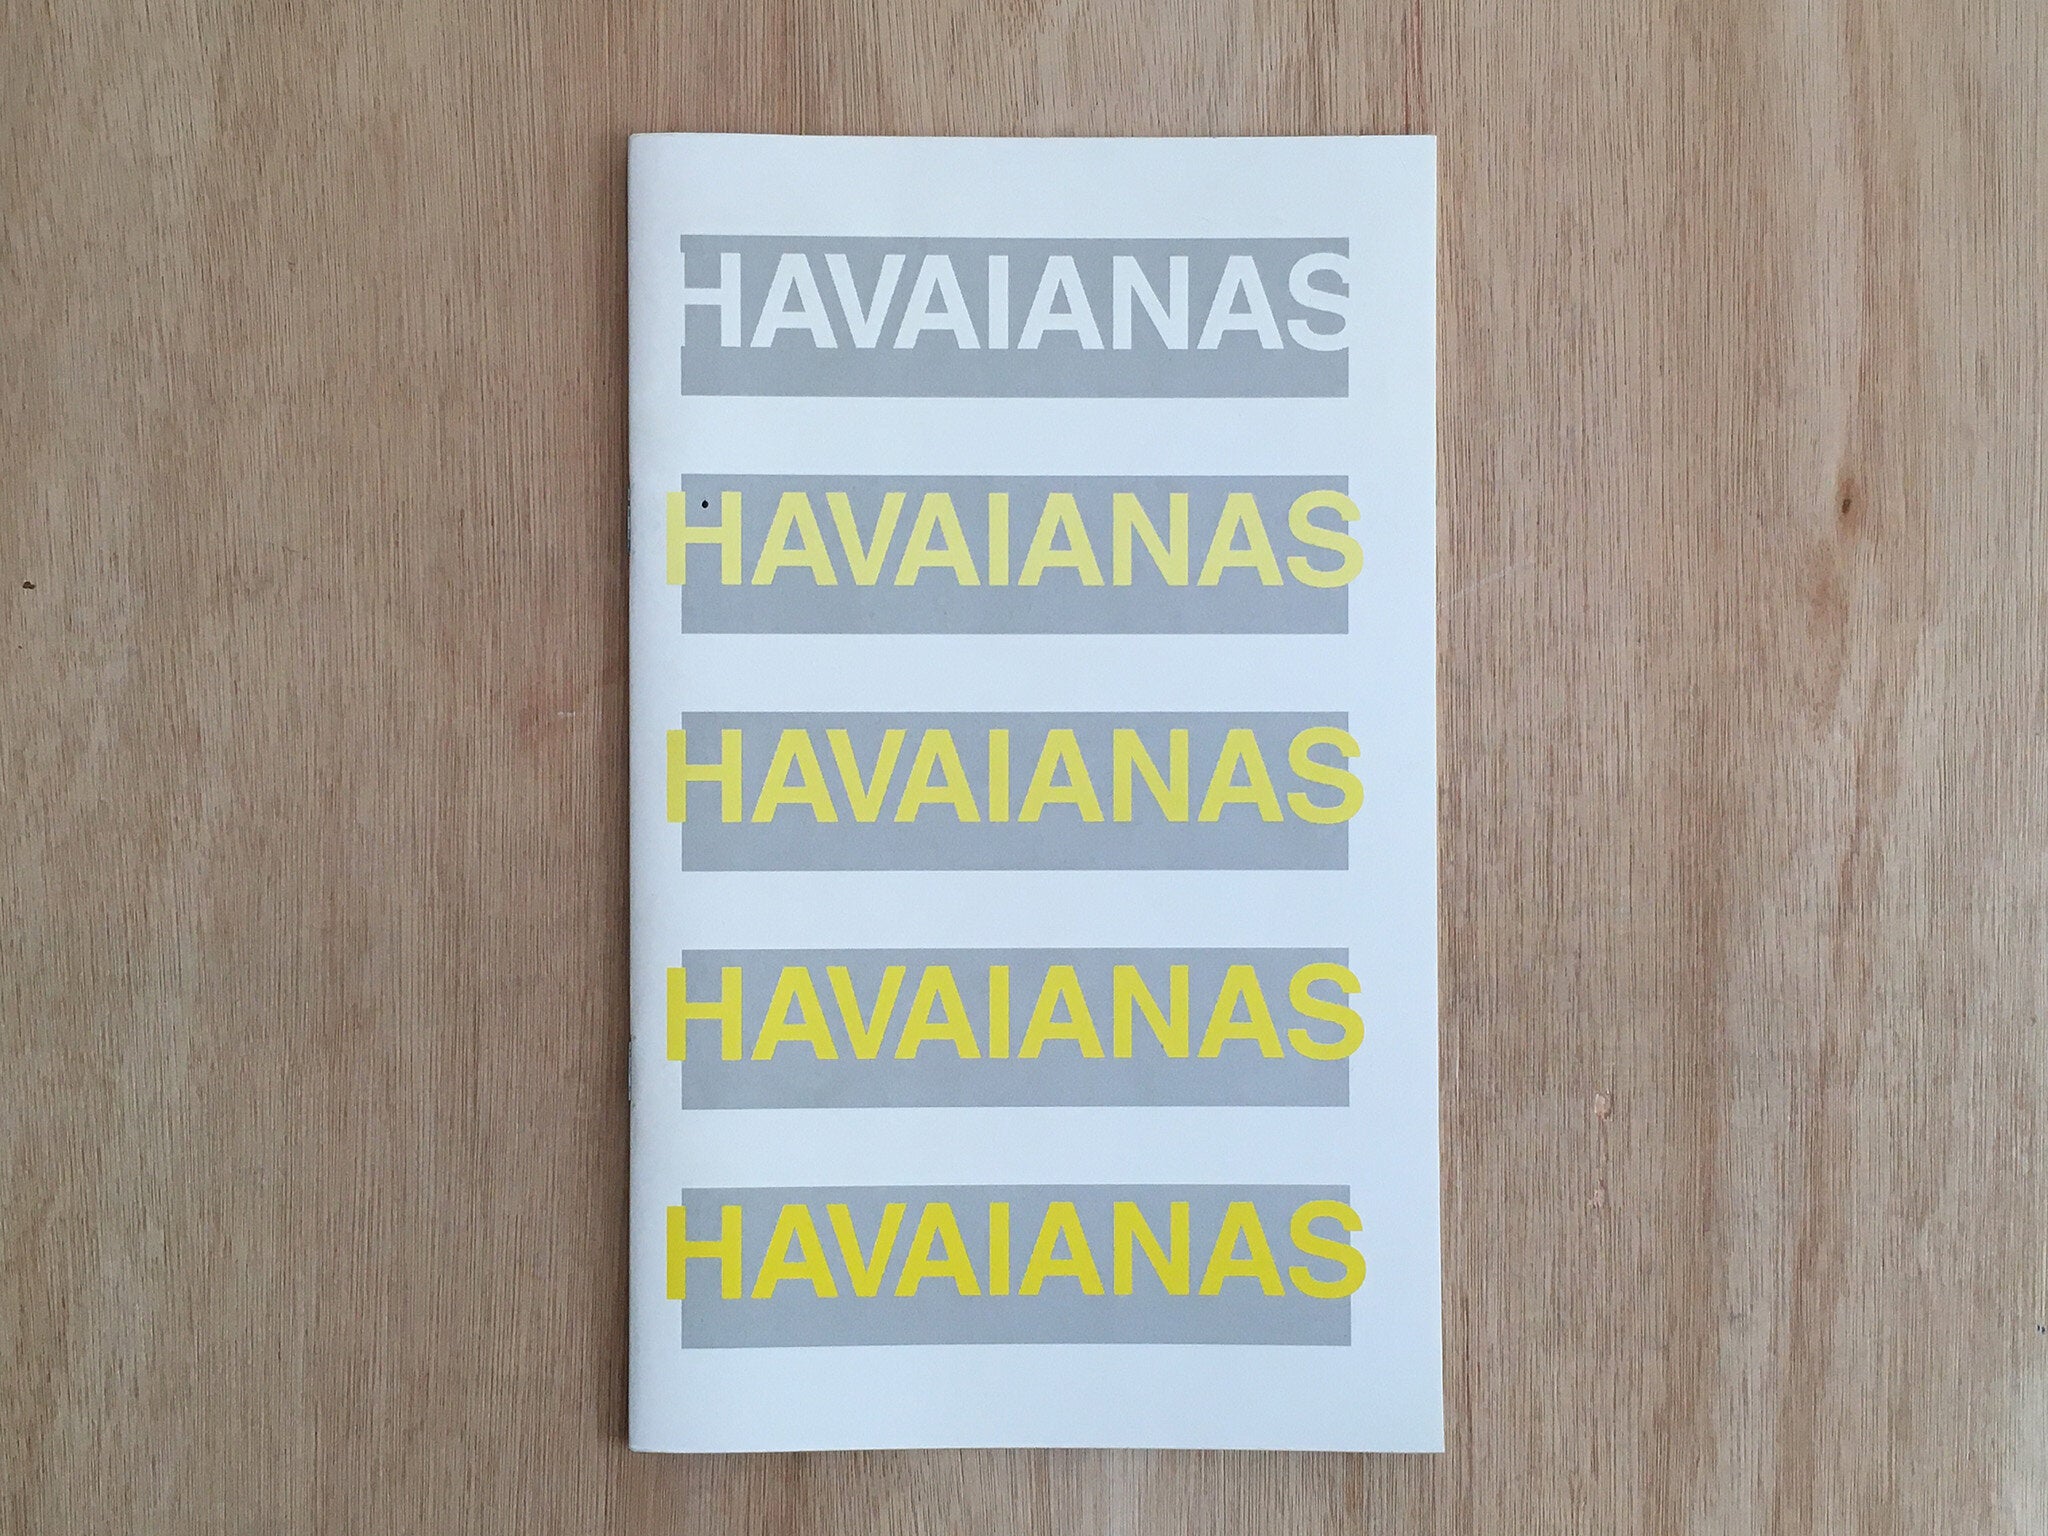 HAVAIANAS by Erik Van Der Weijde